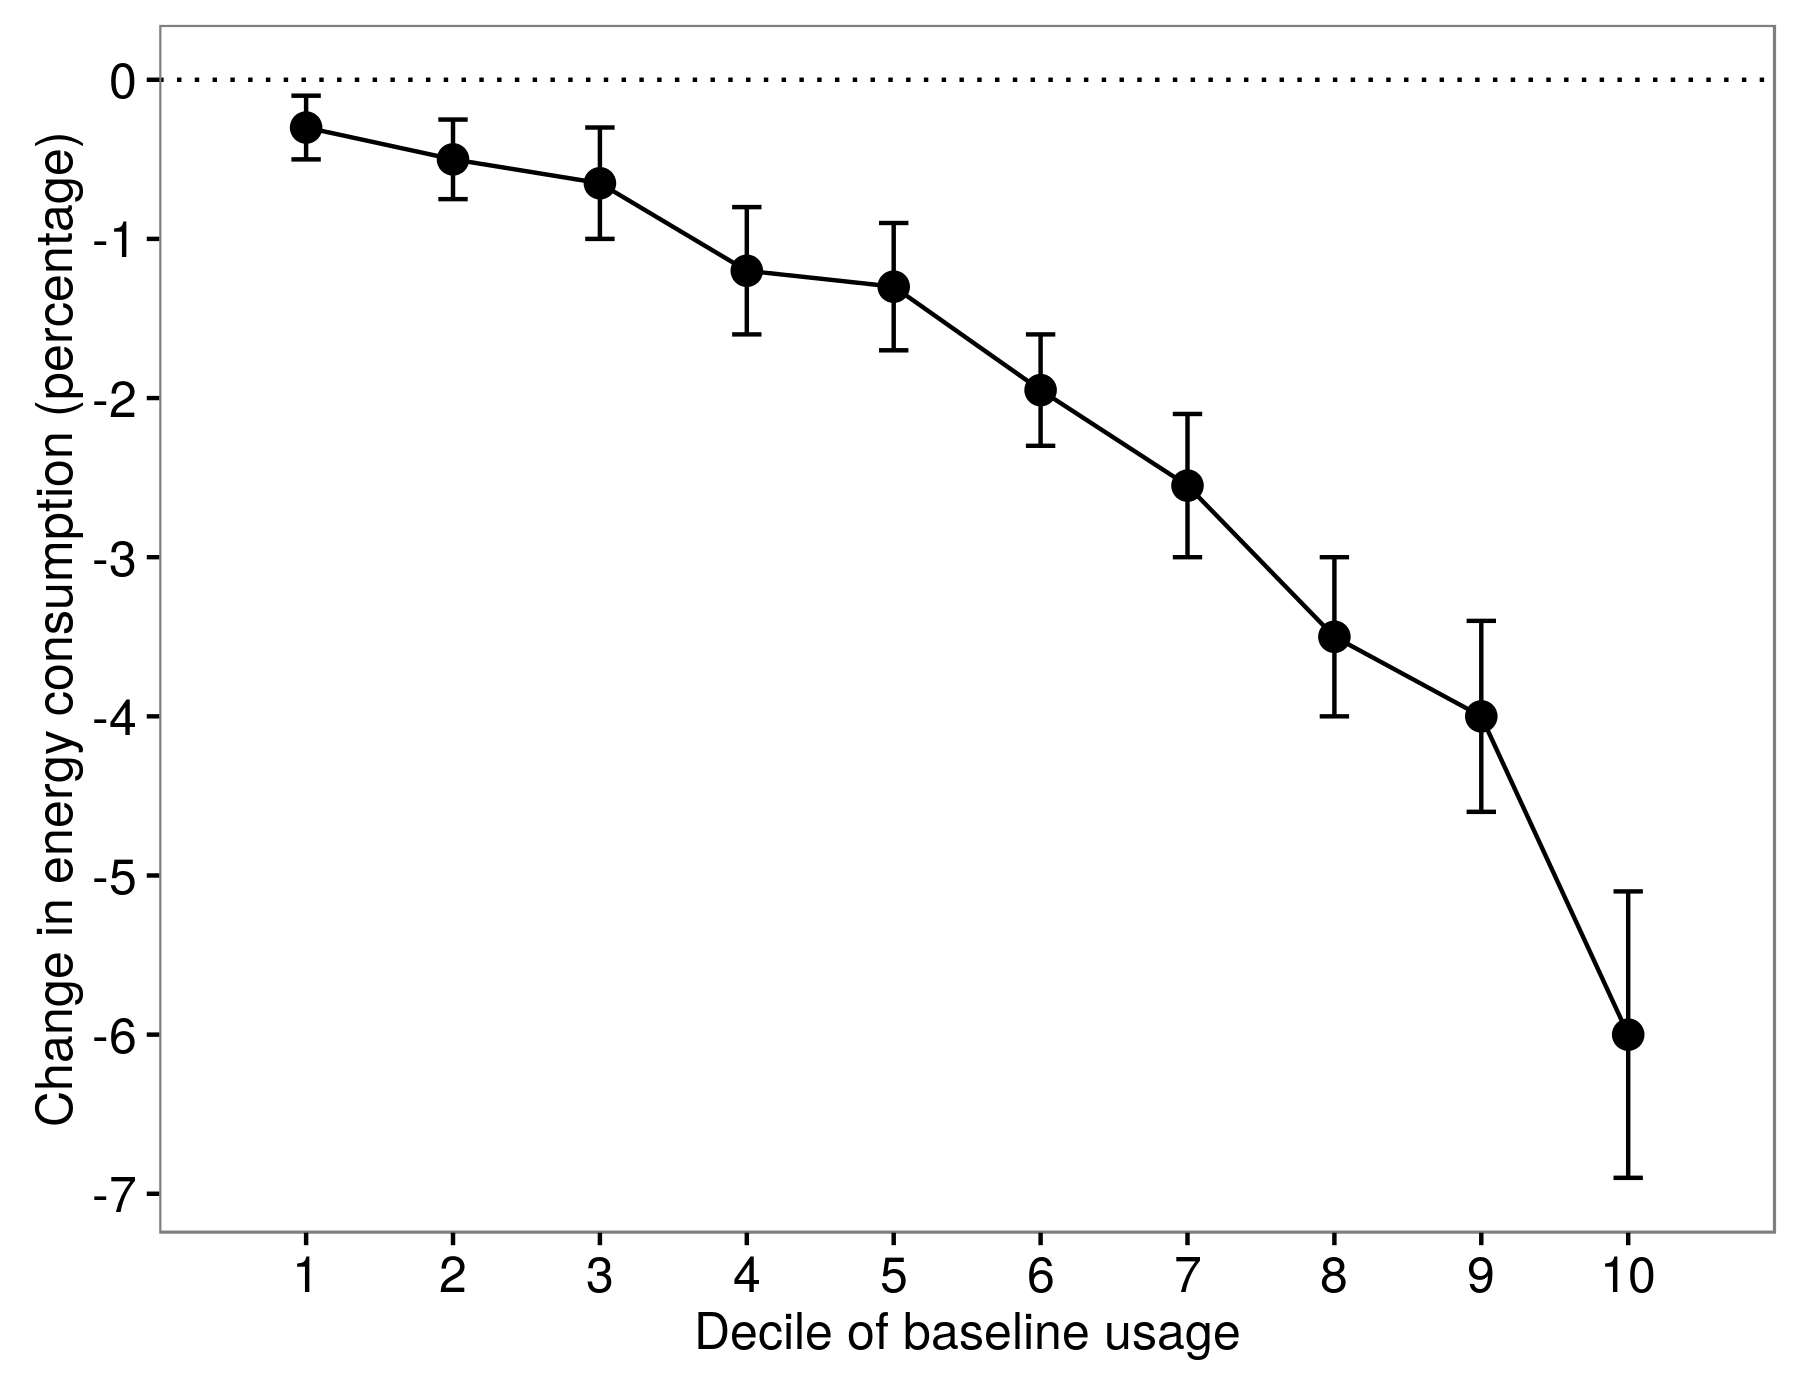 चित्र 4.8: एल्कोट मा उपचार को प्रभावहरु को हिजकत्व (2011)। ऊर्जा प्रयोगमा कमी आधारभूत उपयोगको विभिन्न निर्णयमा व्यक्तिको लागि फरक थियो। एल्कोटबाट (2011), आकृति 8।